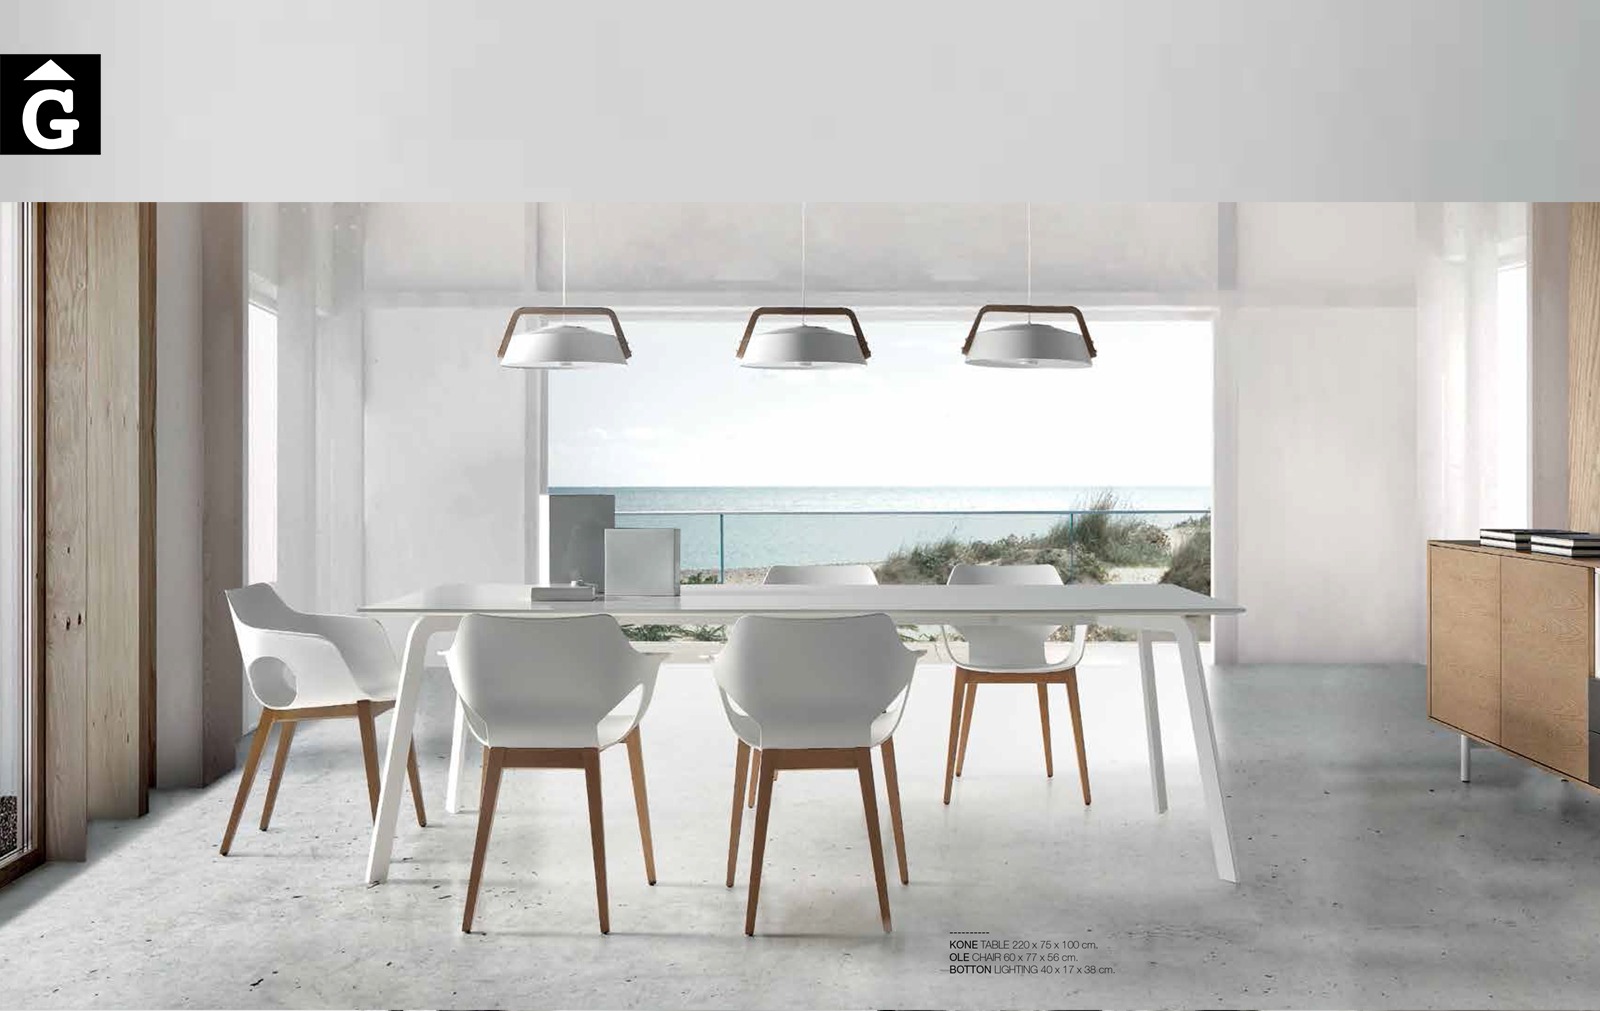 52 1 Taula Kone Loyra muebles by mobles Gifreu Idees per la llar moble de qualitat